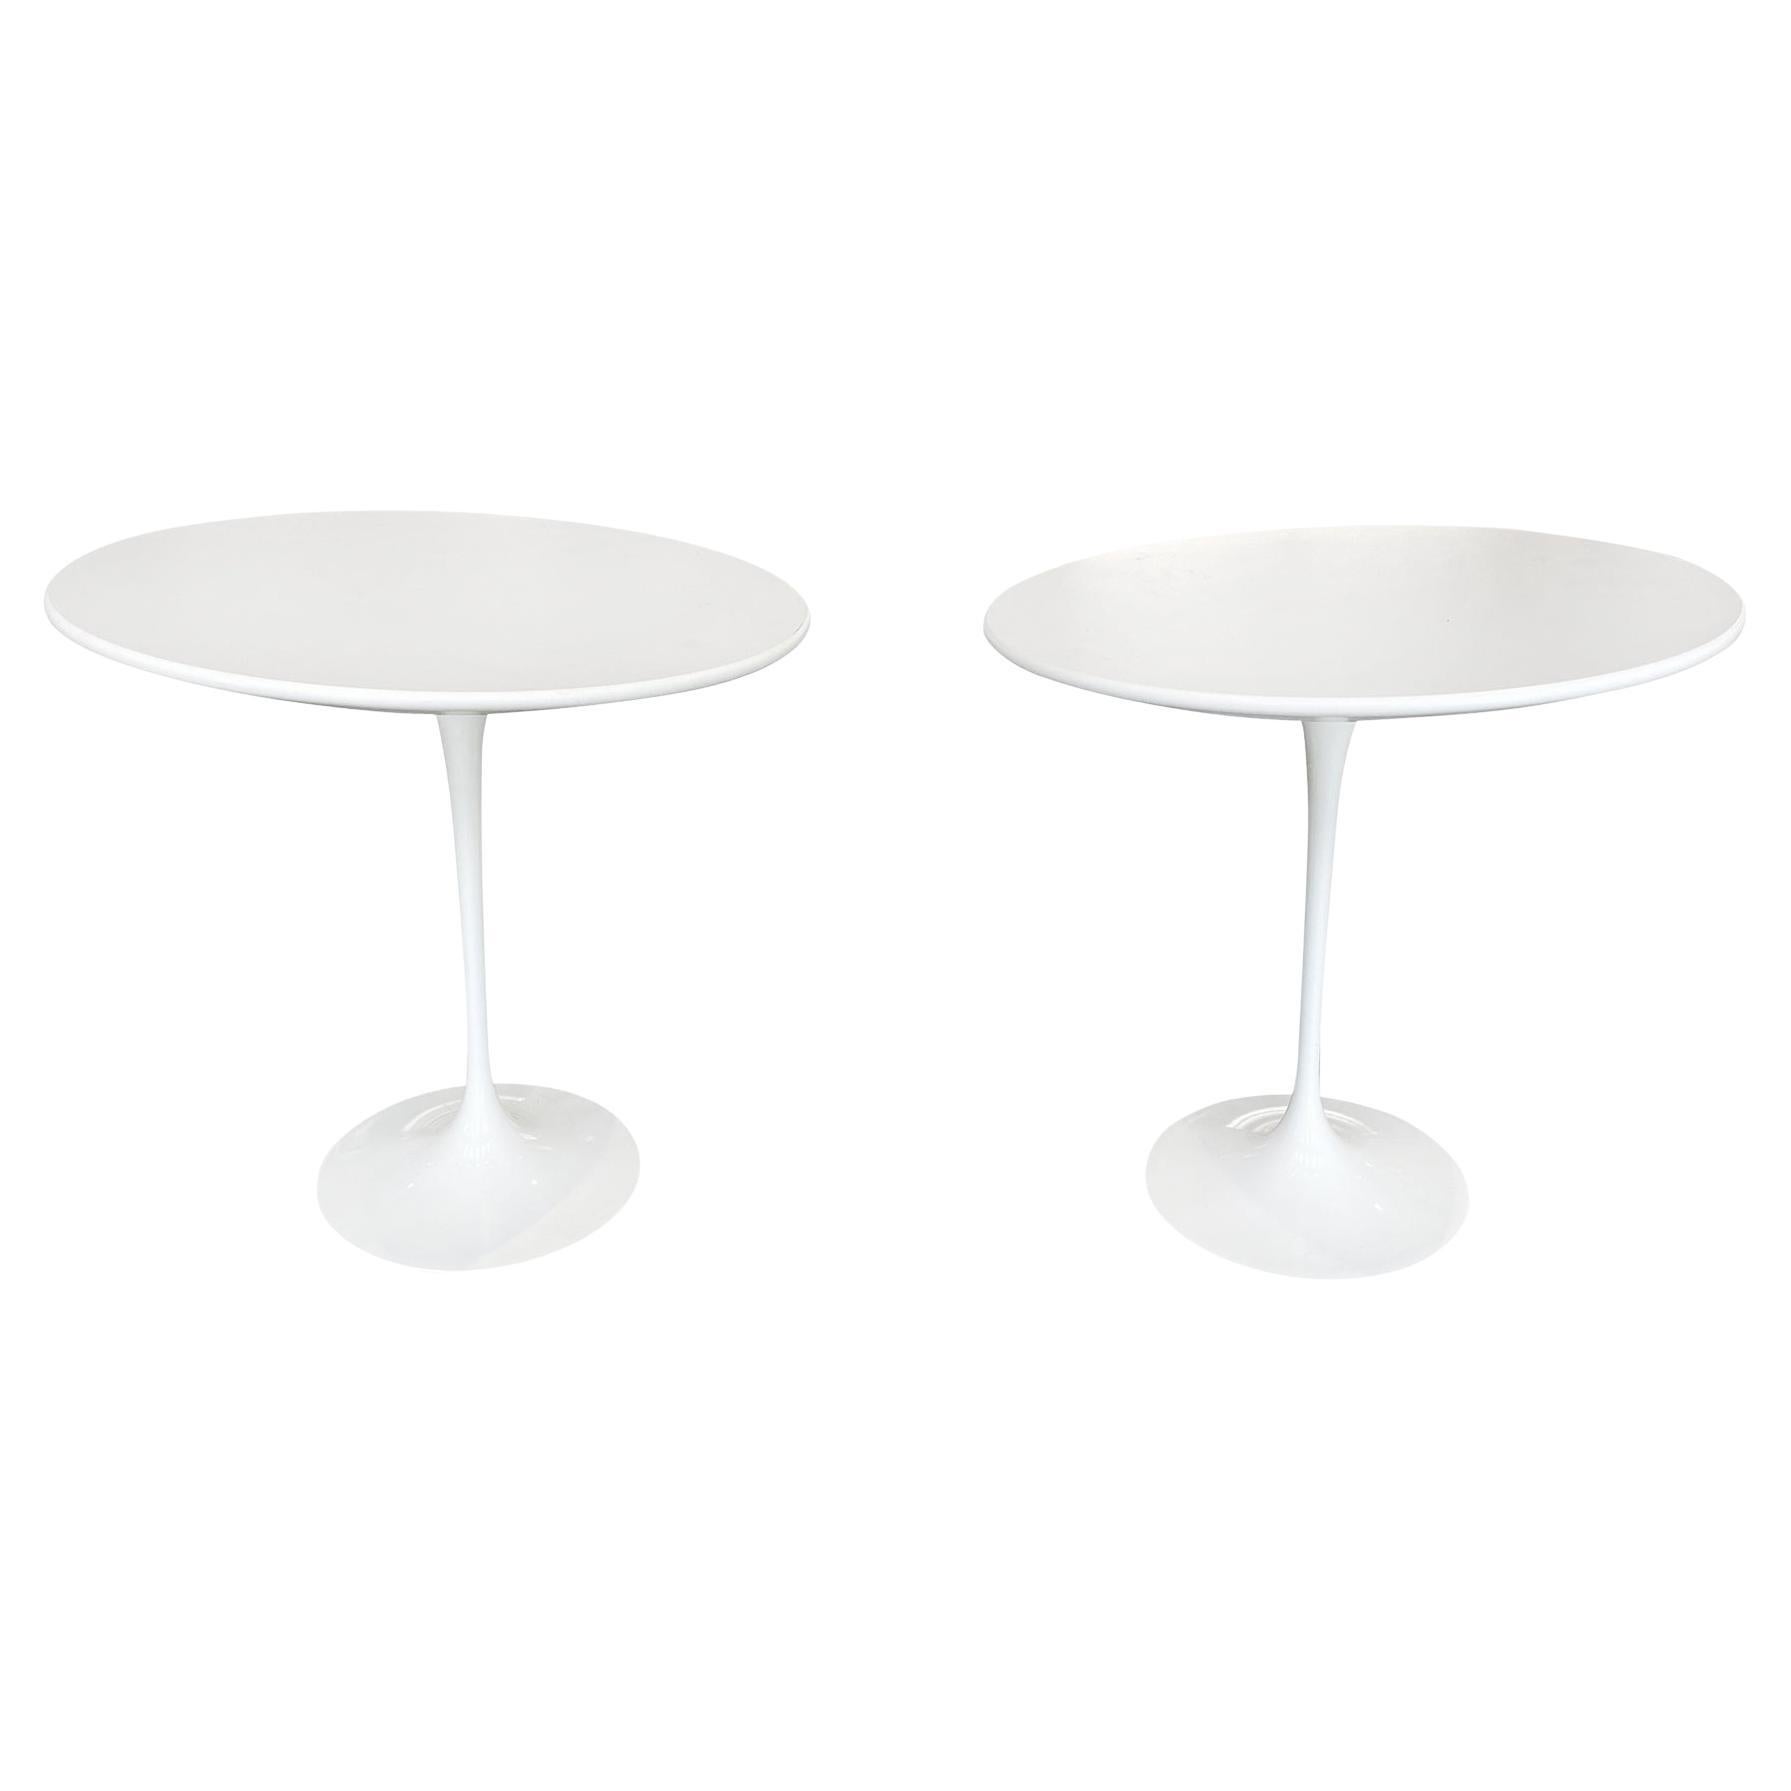 Pair of Eero Saarinen Tulip Side Tables for Knoll